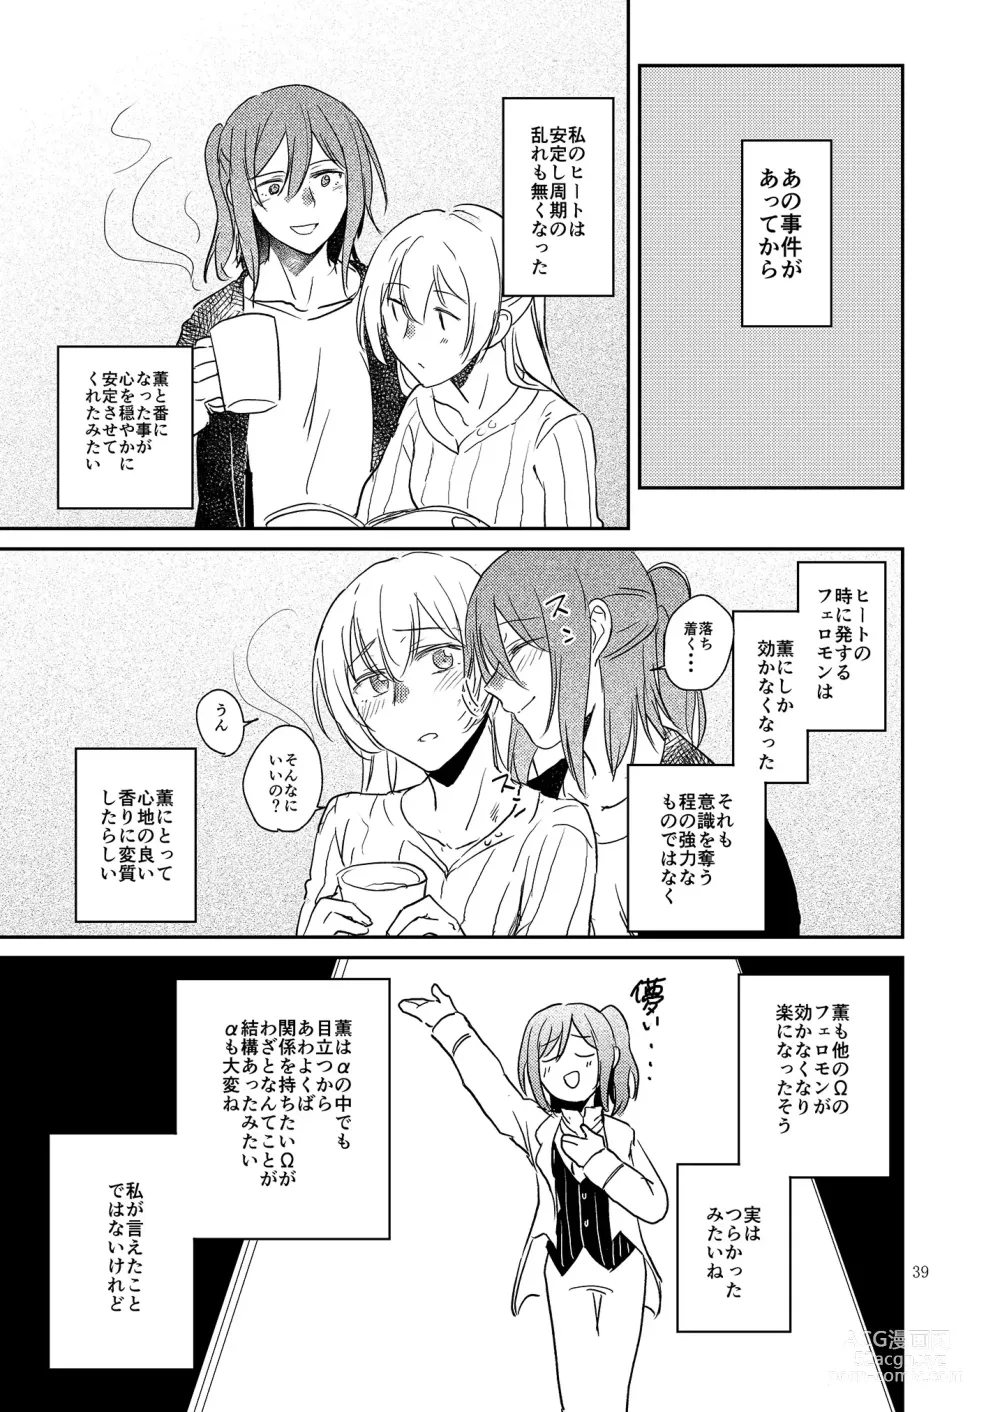 Page 39 of doujinshi Kimi no Tame ni Watashi ni wa